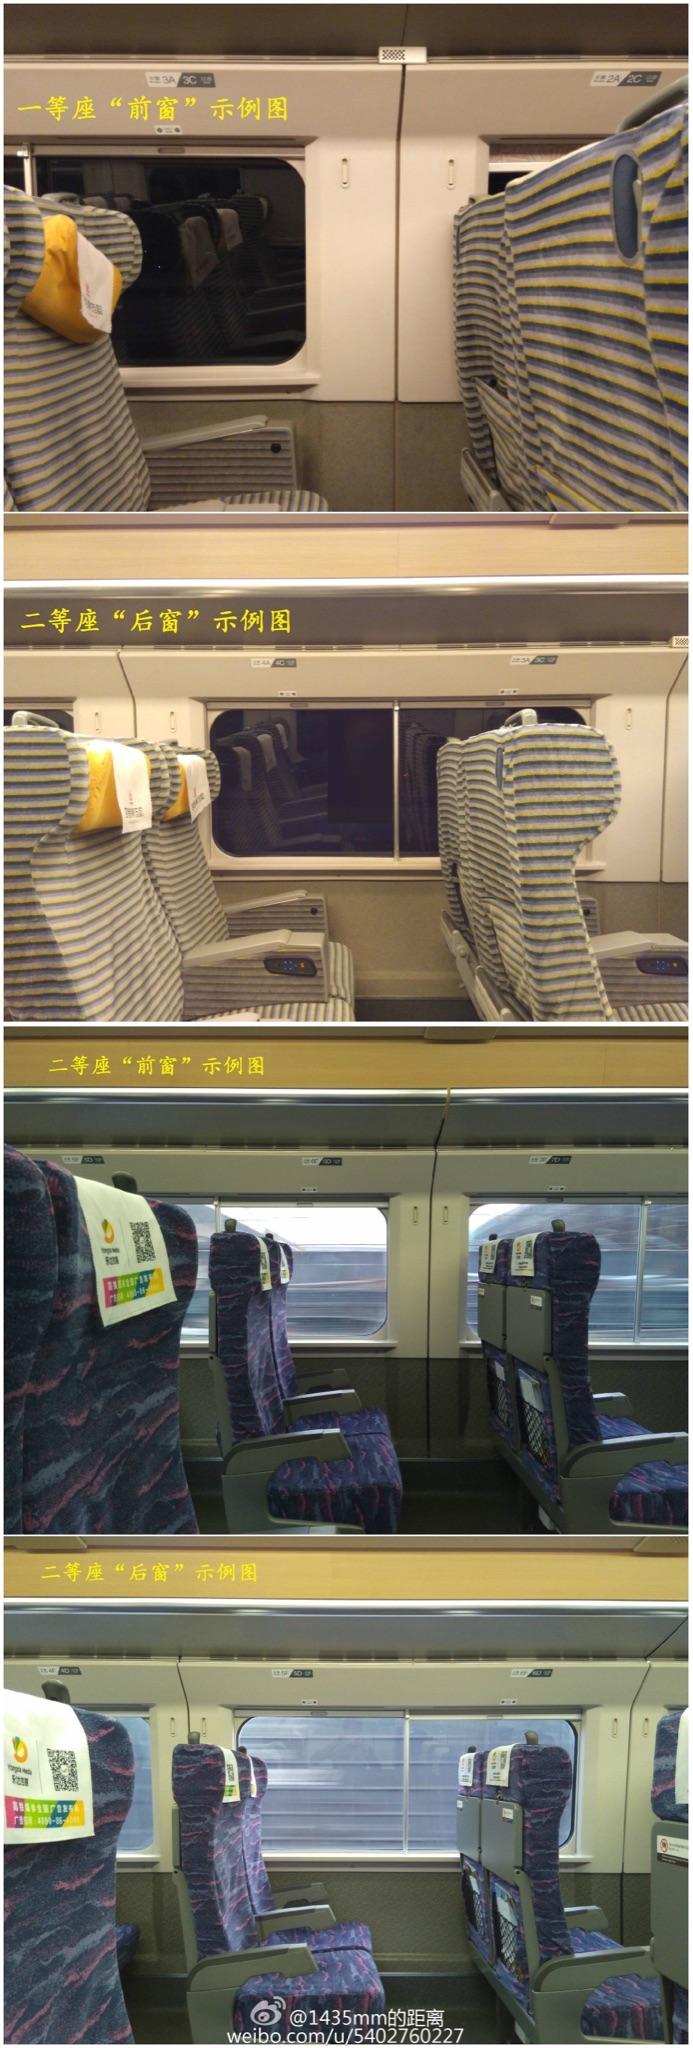 高铁二等座和一等座图图片